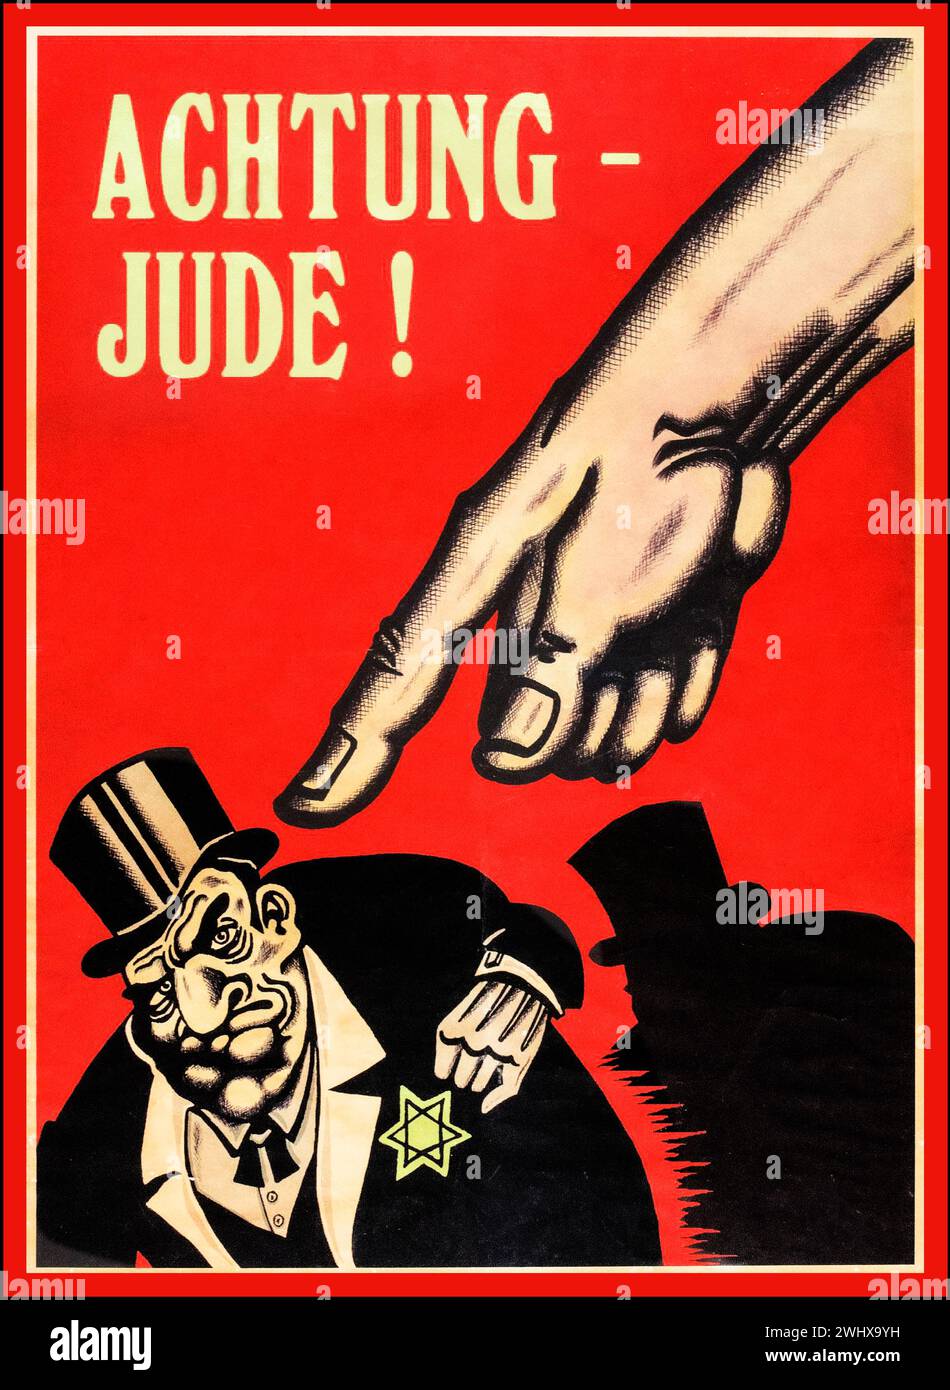 ACHTUNG JUDE WW2 1940er Jahre antisemitischer antijüdischer Rassist Nazi-Deutschland Propaganda Nazi Party Dritte Reich Poster, fürchtet eine kraftvolle Hand, die auf eine jüdische Stereotype-Karikatur eines Mannes zeigt, der einen Geschäftsanzug und Hut mit dem „Davidstern“ auf der Brust trägt. Das Poster trägt den Titel: 'ACHTUNG - JUDE!' („ACHTUNG – JUDE!“). Stockfoto